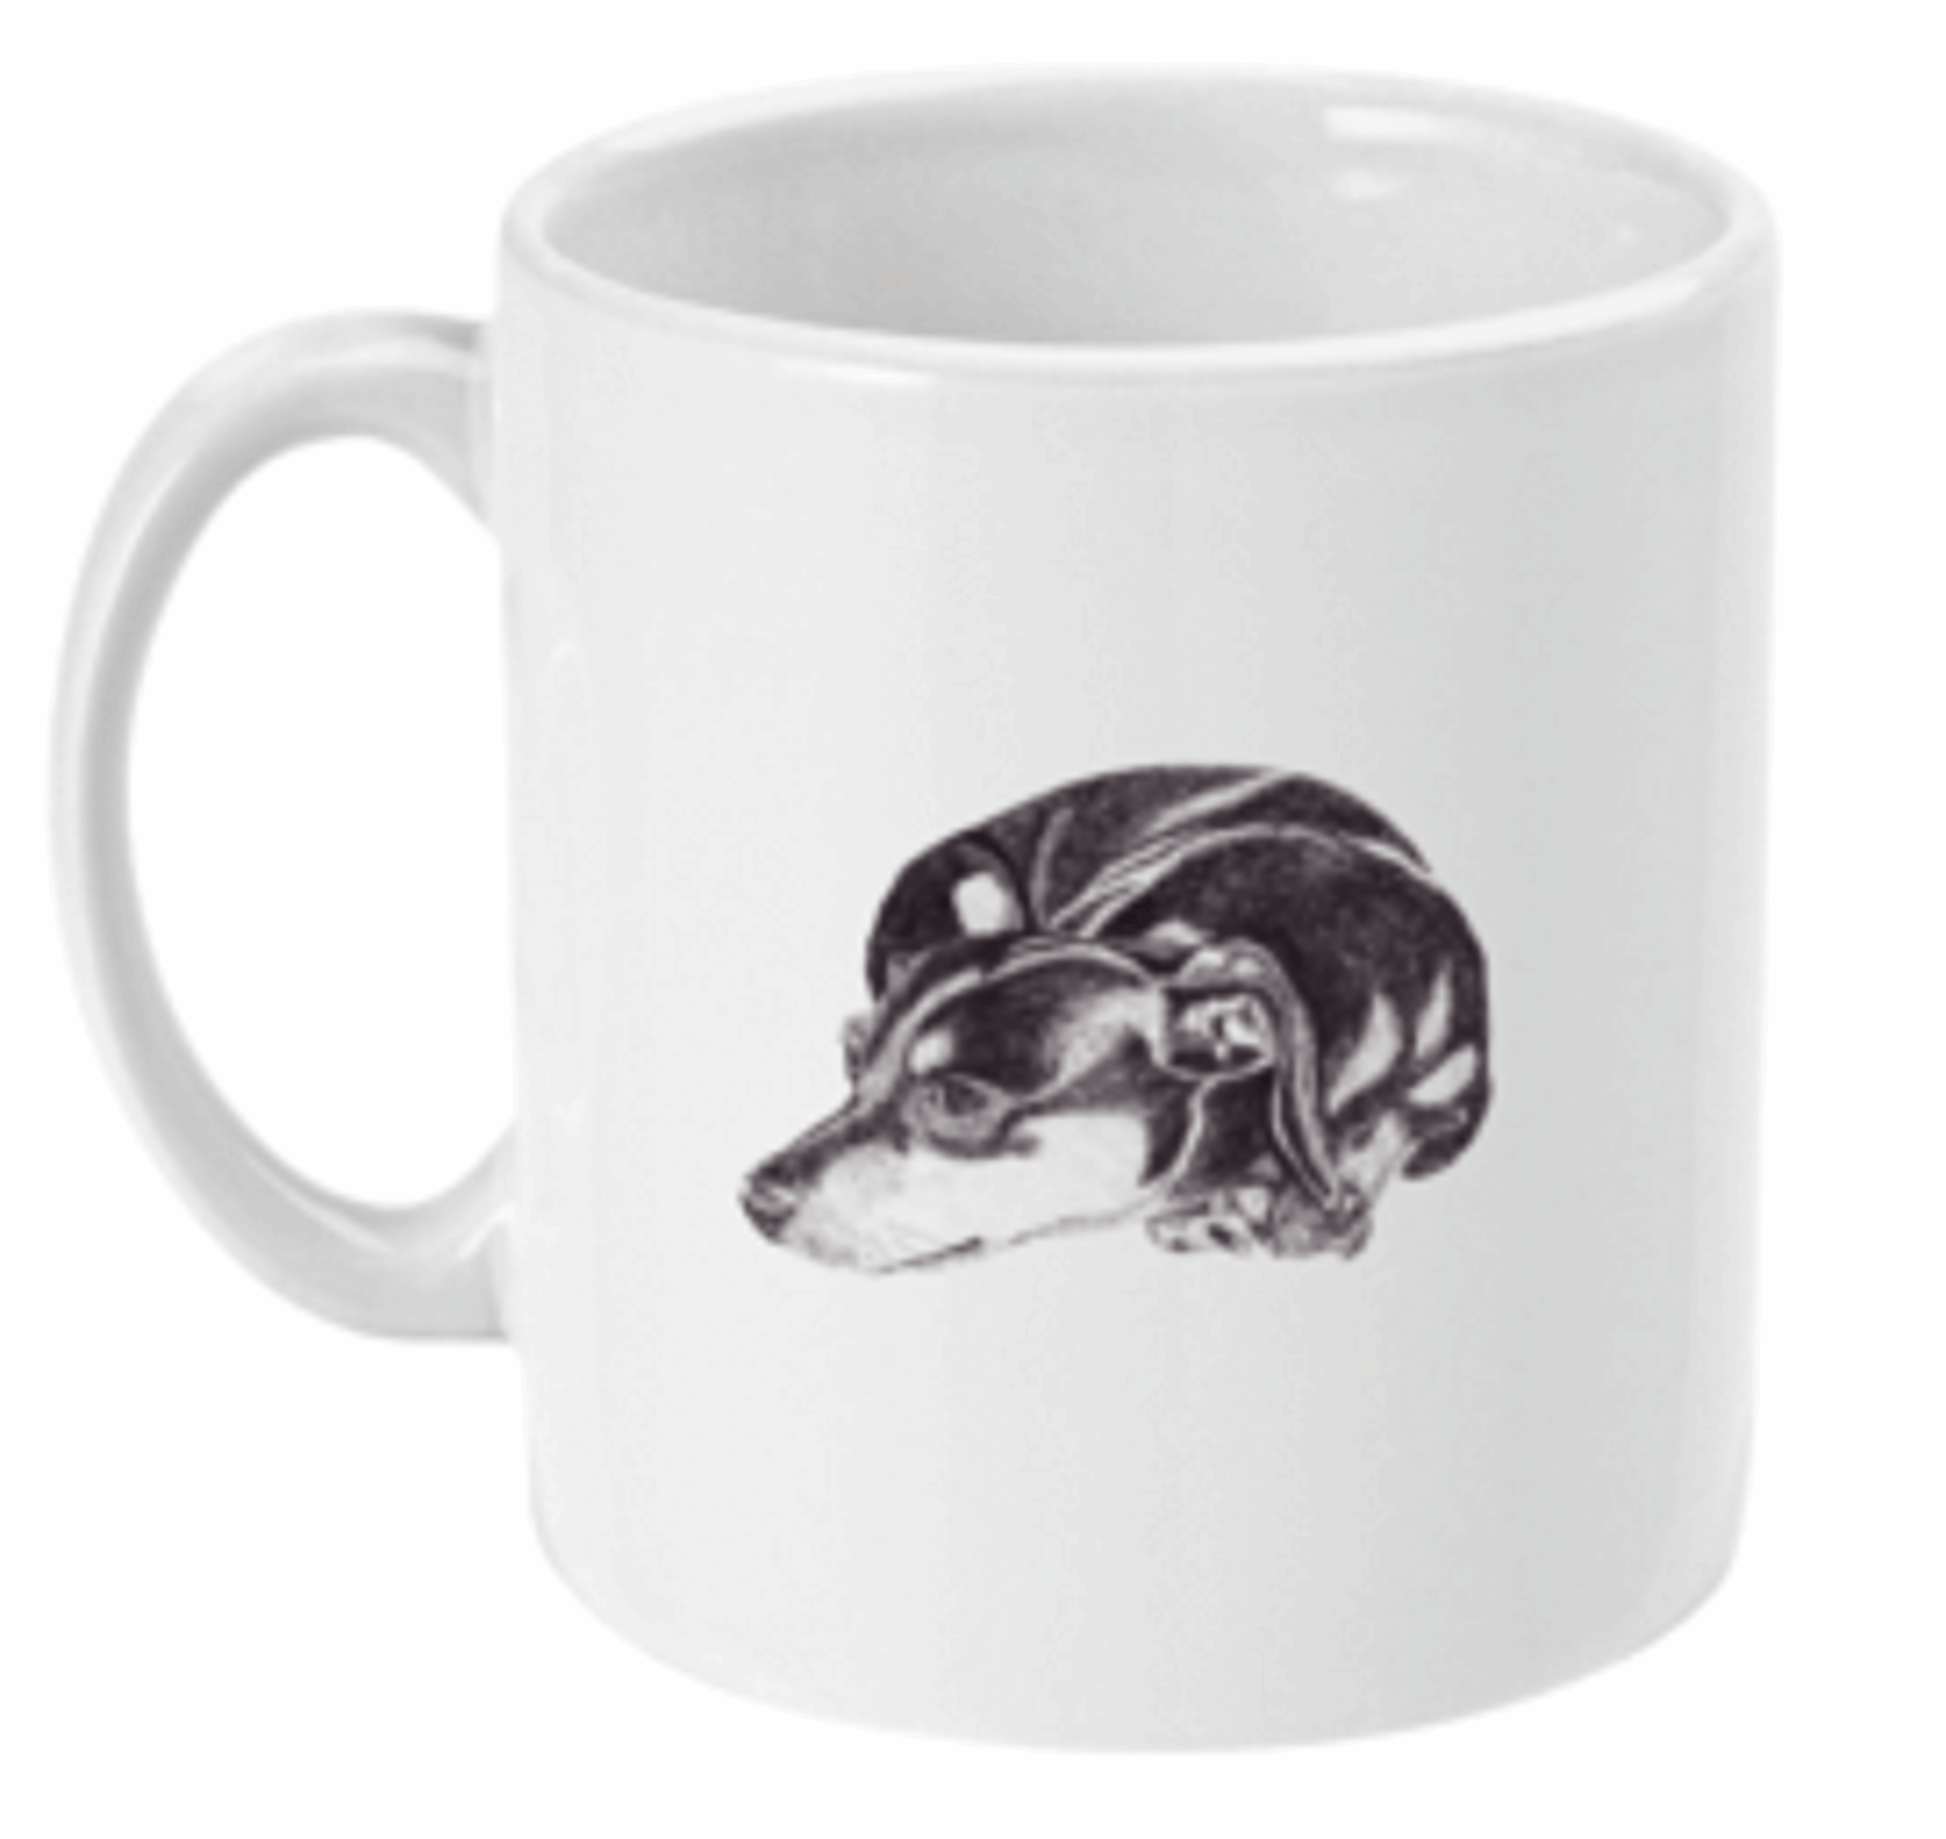  Dachshund Dog Coffe or Tea Mug by Free Spirit Accessories sold by Free Spirit Accessories